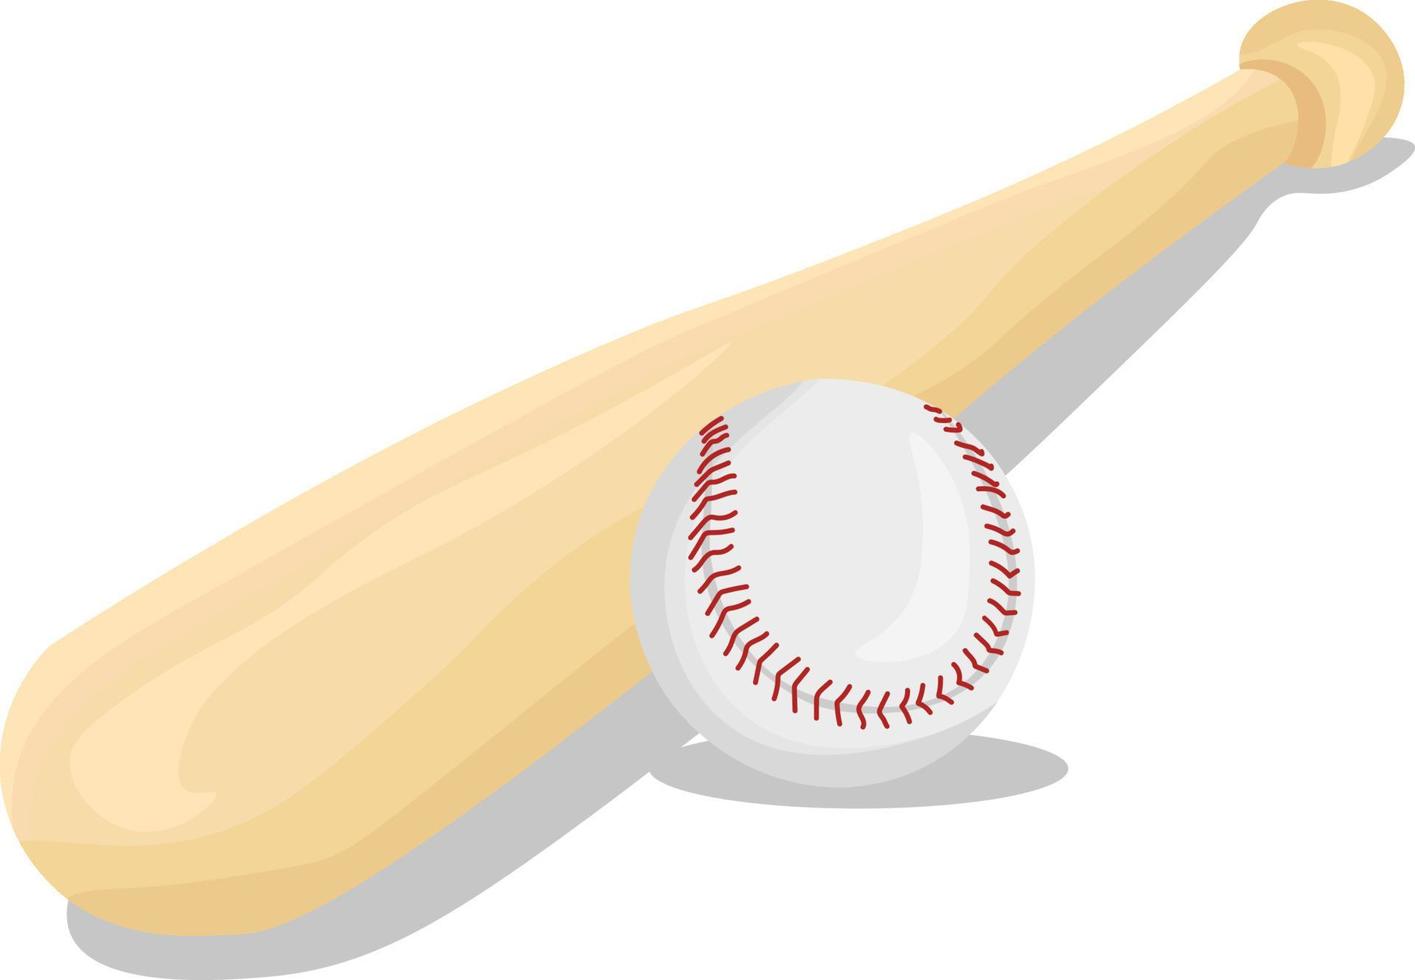 bate de béisbol, ilustración, vector sobre fondo blanco